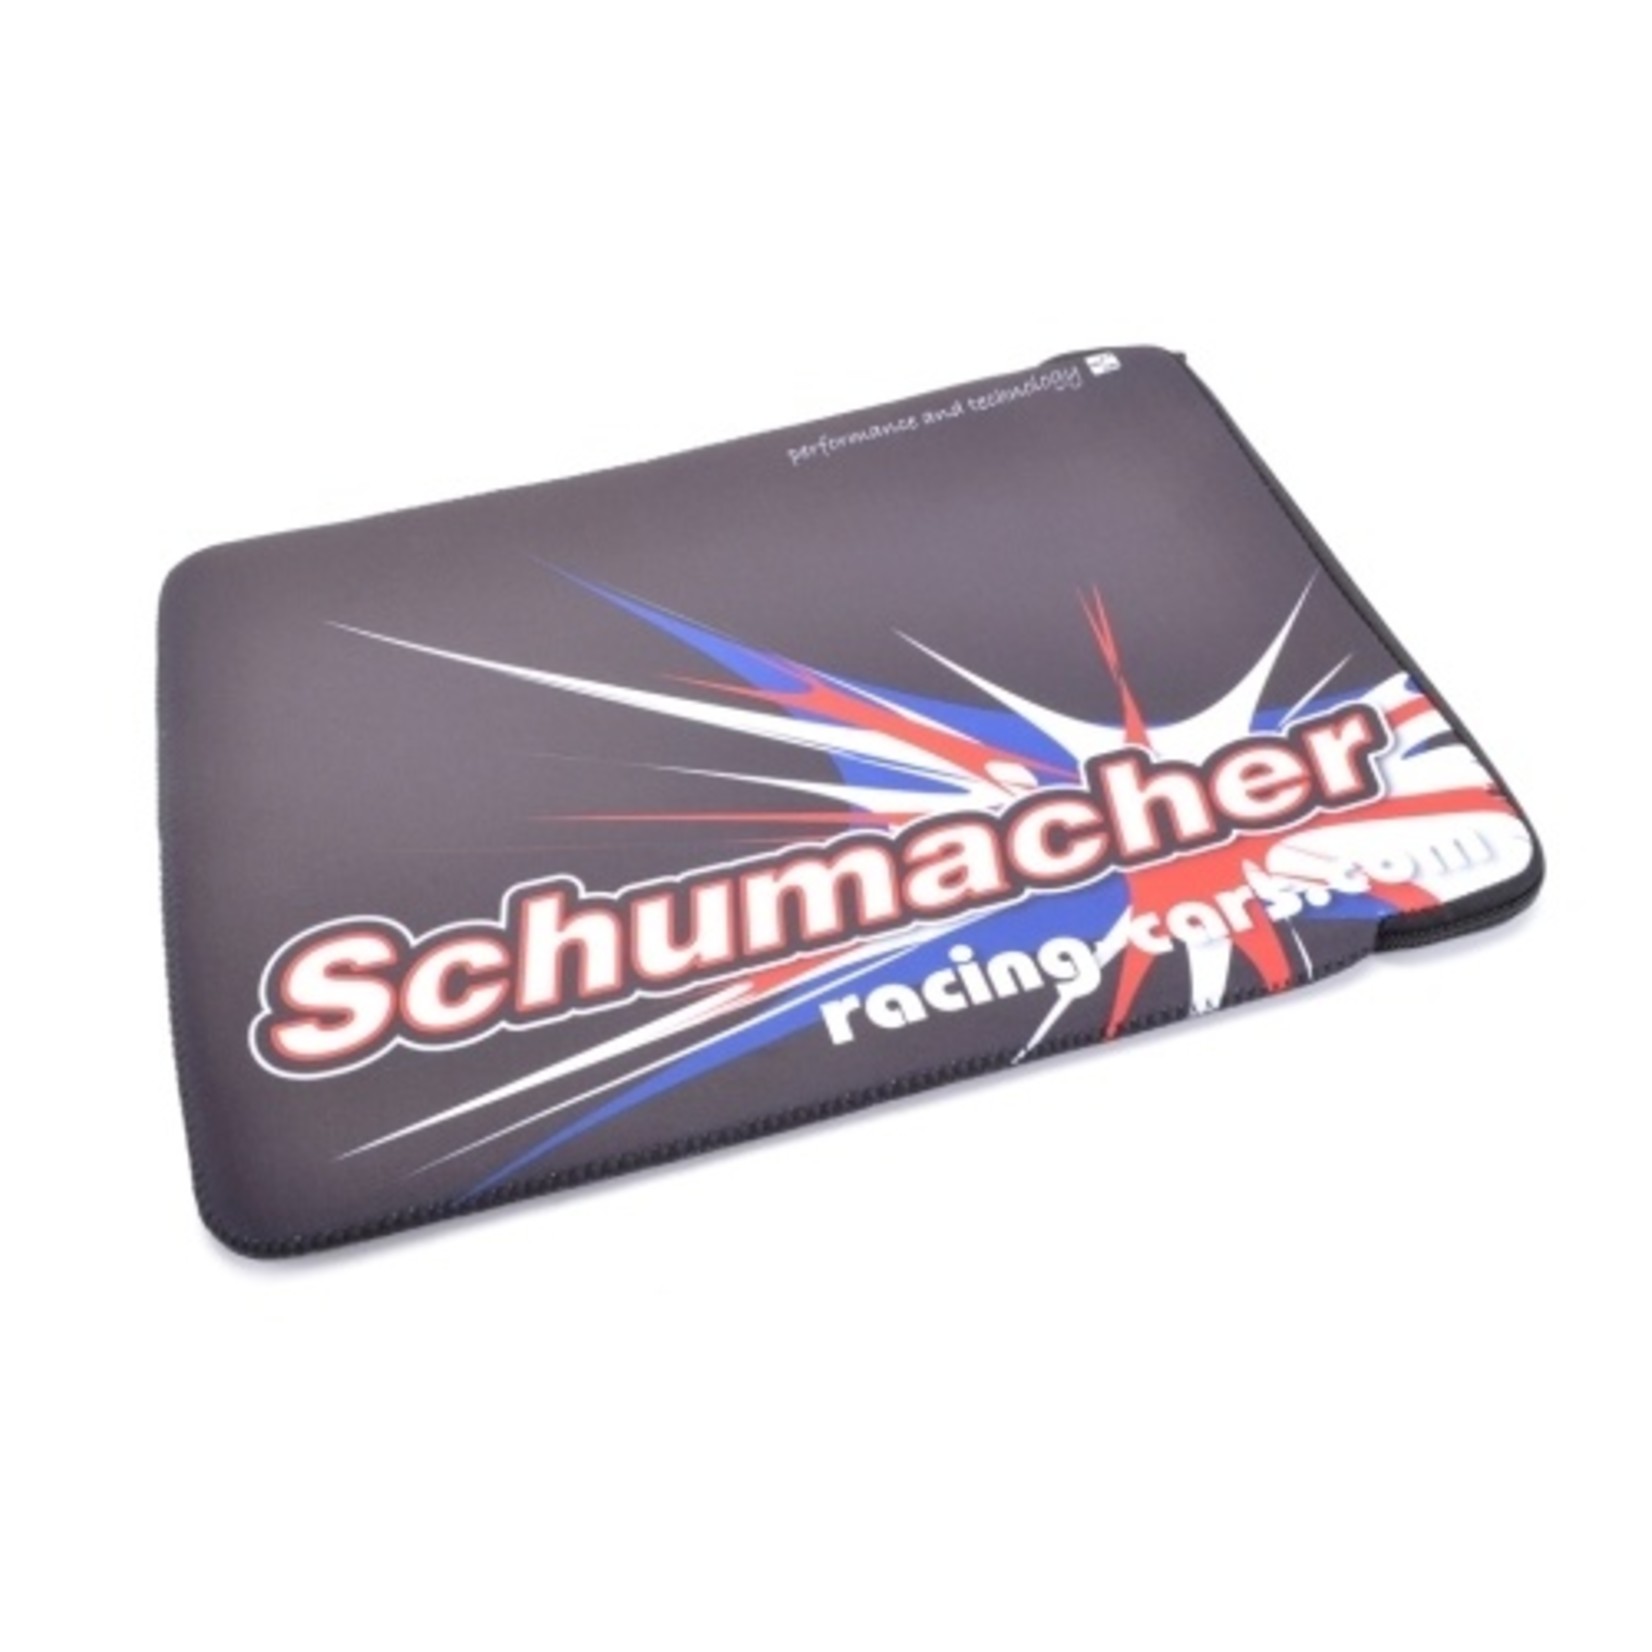 Schumacher Schumacher G354 - Schumacher Neoprene Bag